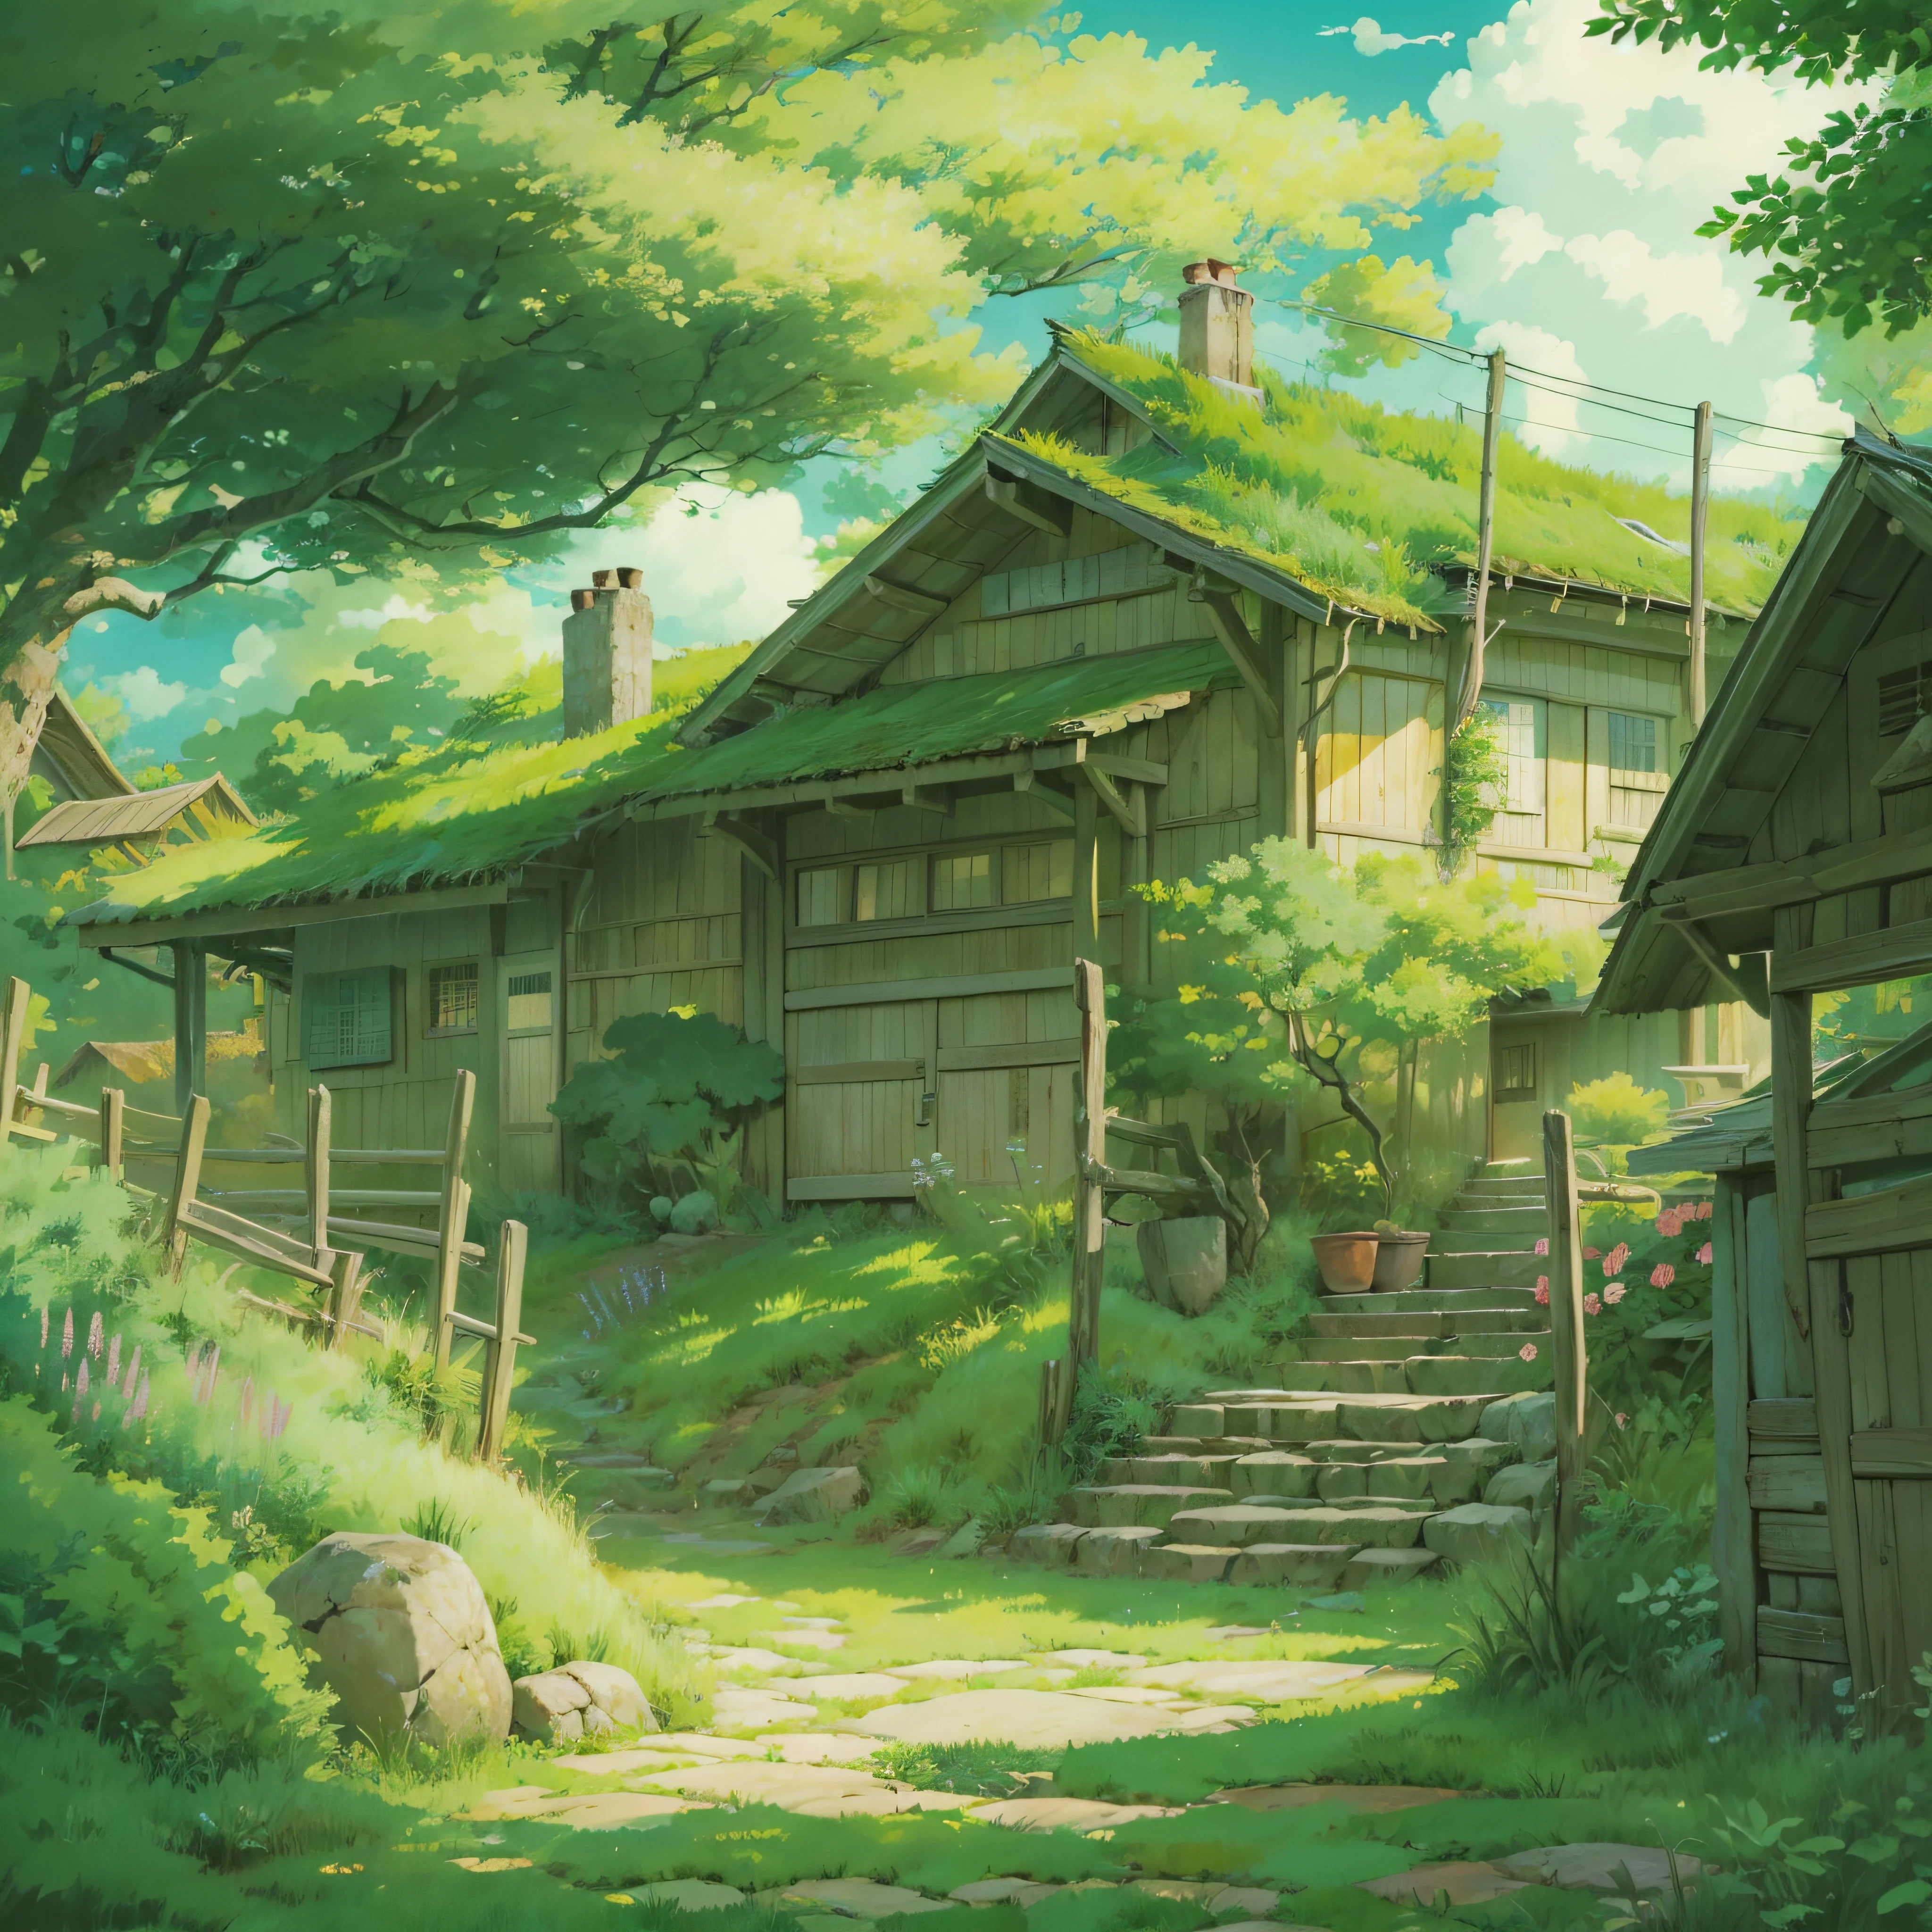 und Seelen、Technischer Hintergrund、Schöne Landschaften、Gottheiten々Shikai、Natürliche Objekte、Studio Ghibli-Stil、Sie können das Gefühl der Bürste spüren、Blick auf die Landschaft